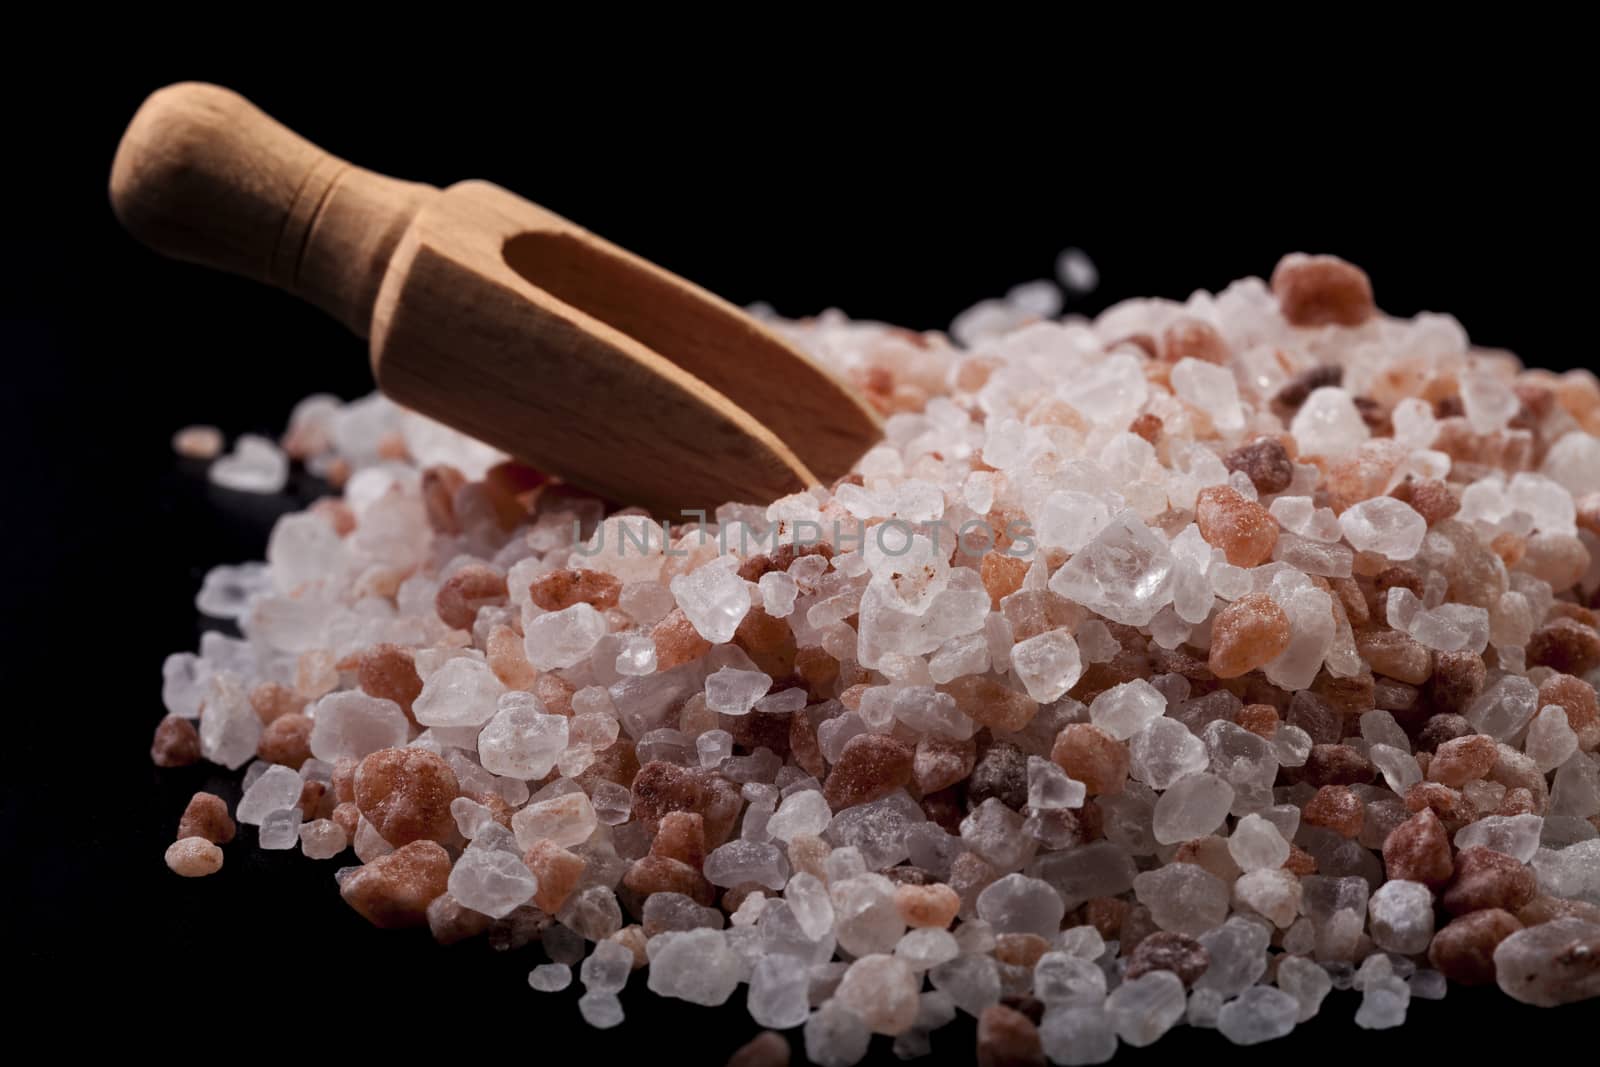 Himlayan Salt Close-up by orcearo